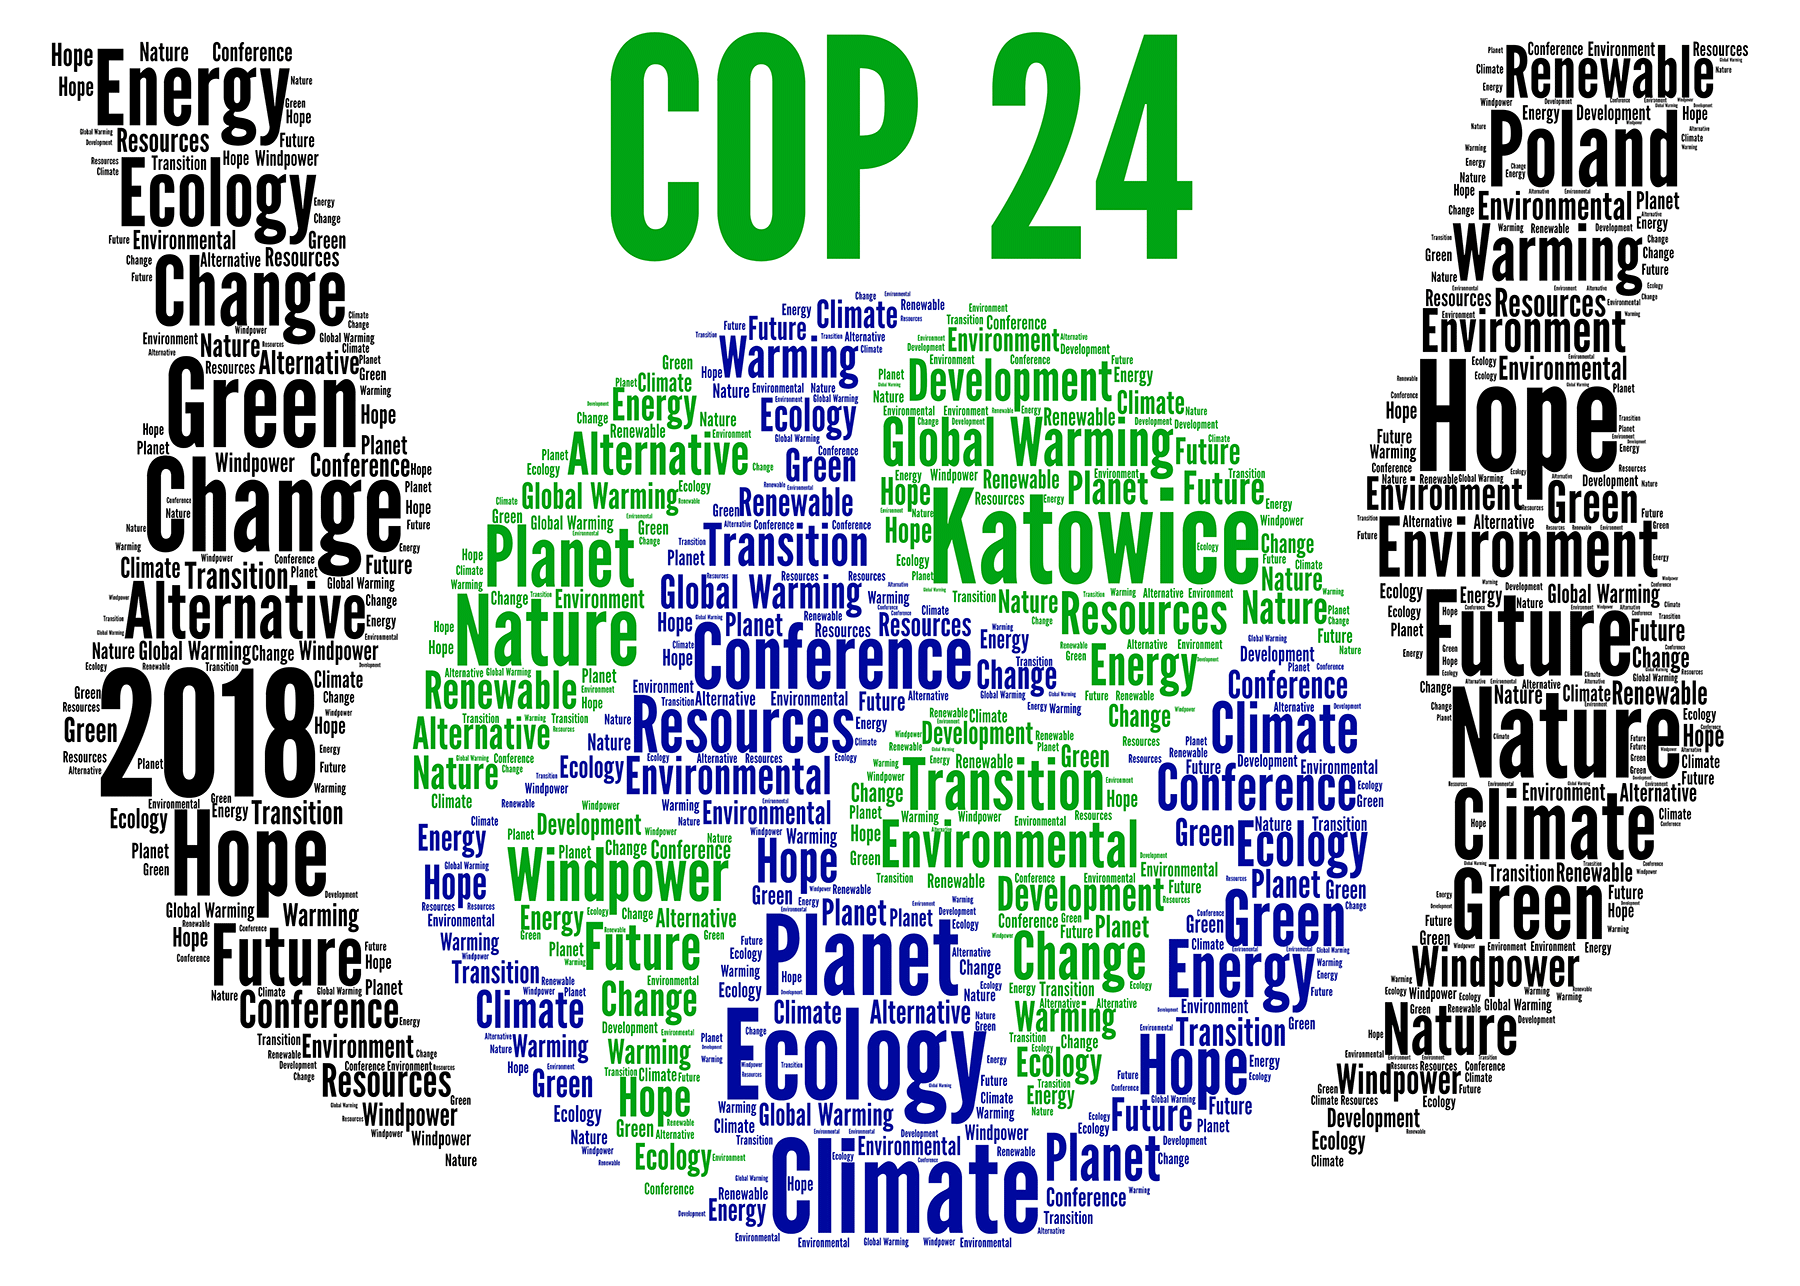 Σημαντικό χάσμα μεταξύ προσδοκιών των πολιτών και αποφάσεων των κυβερνήσεων ανέδειξε η 24η διάσκεψη του ΟΗΕ για το κλίμα στο Κατοβίτσε της Πολωνίας (COP24)